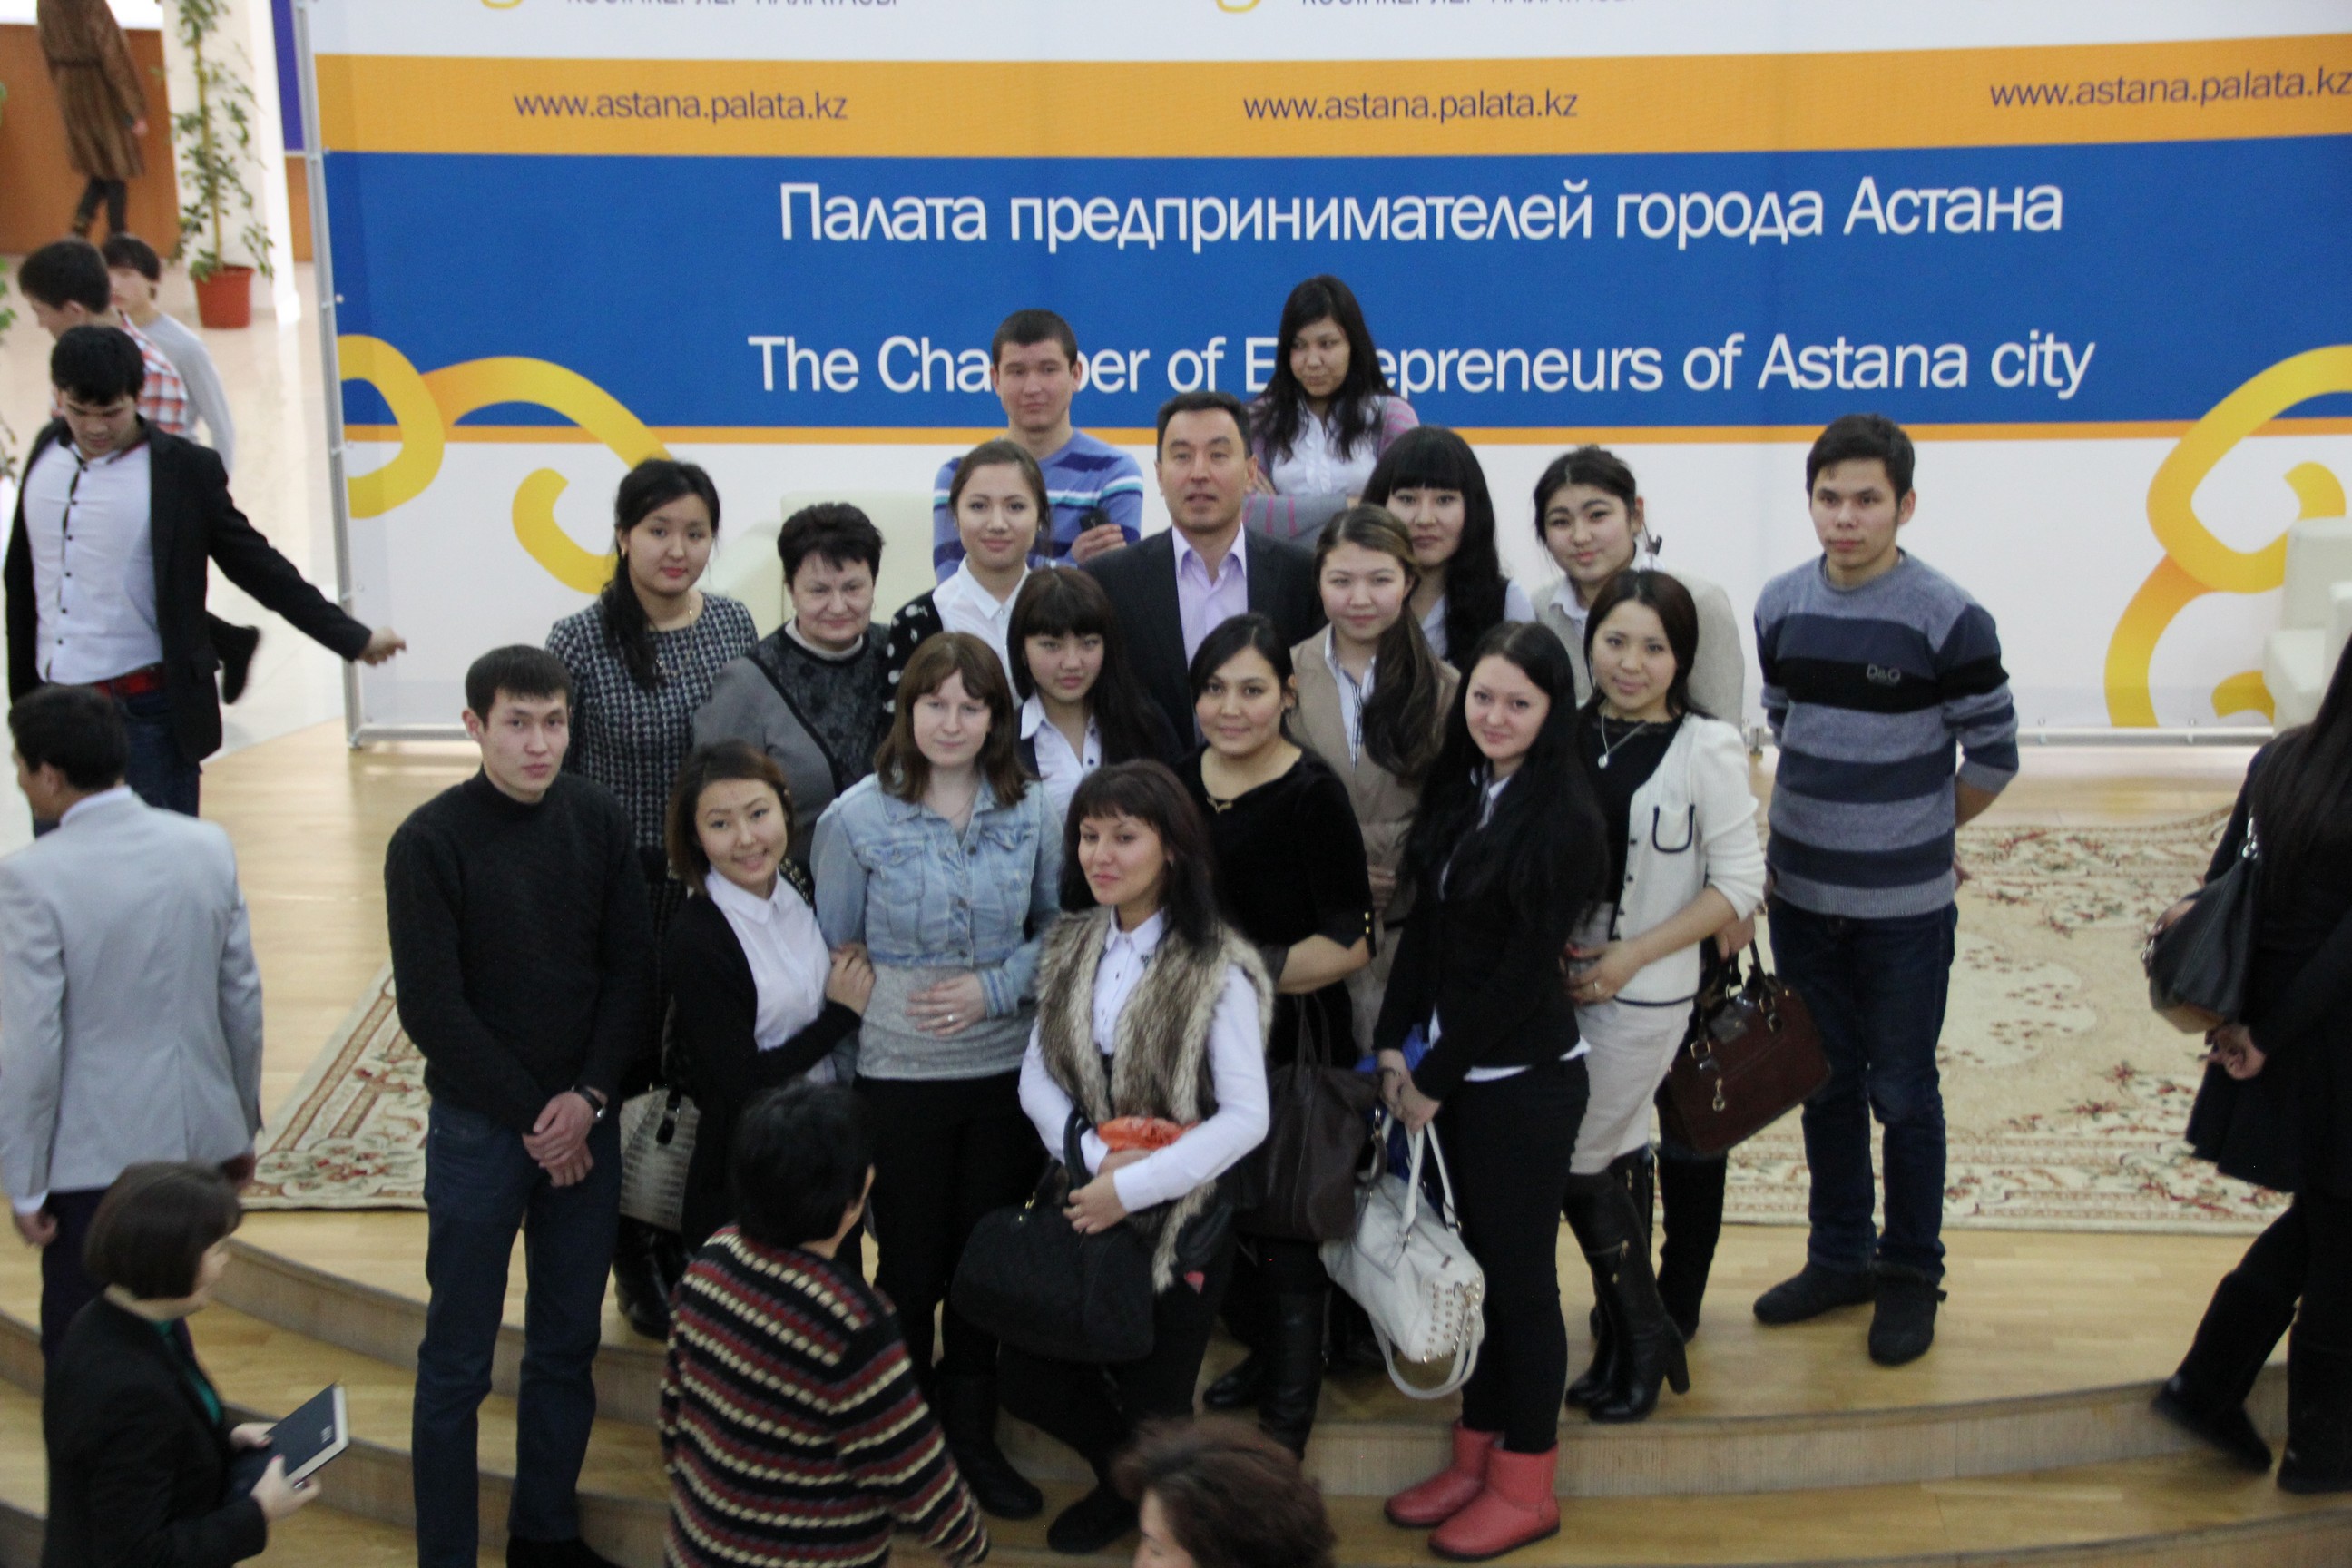 Serikbay Bisekeev meeting students in Astana